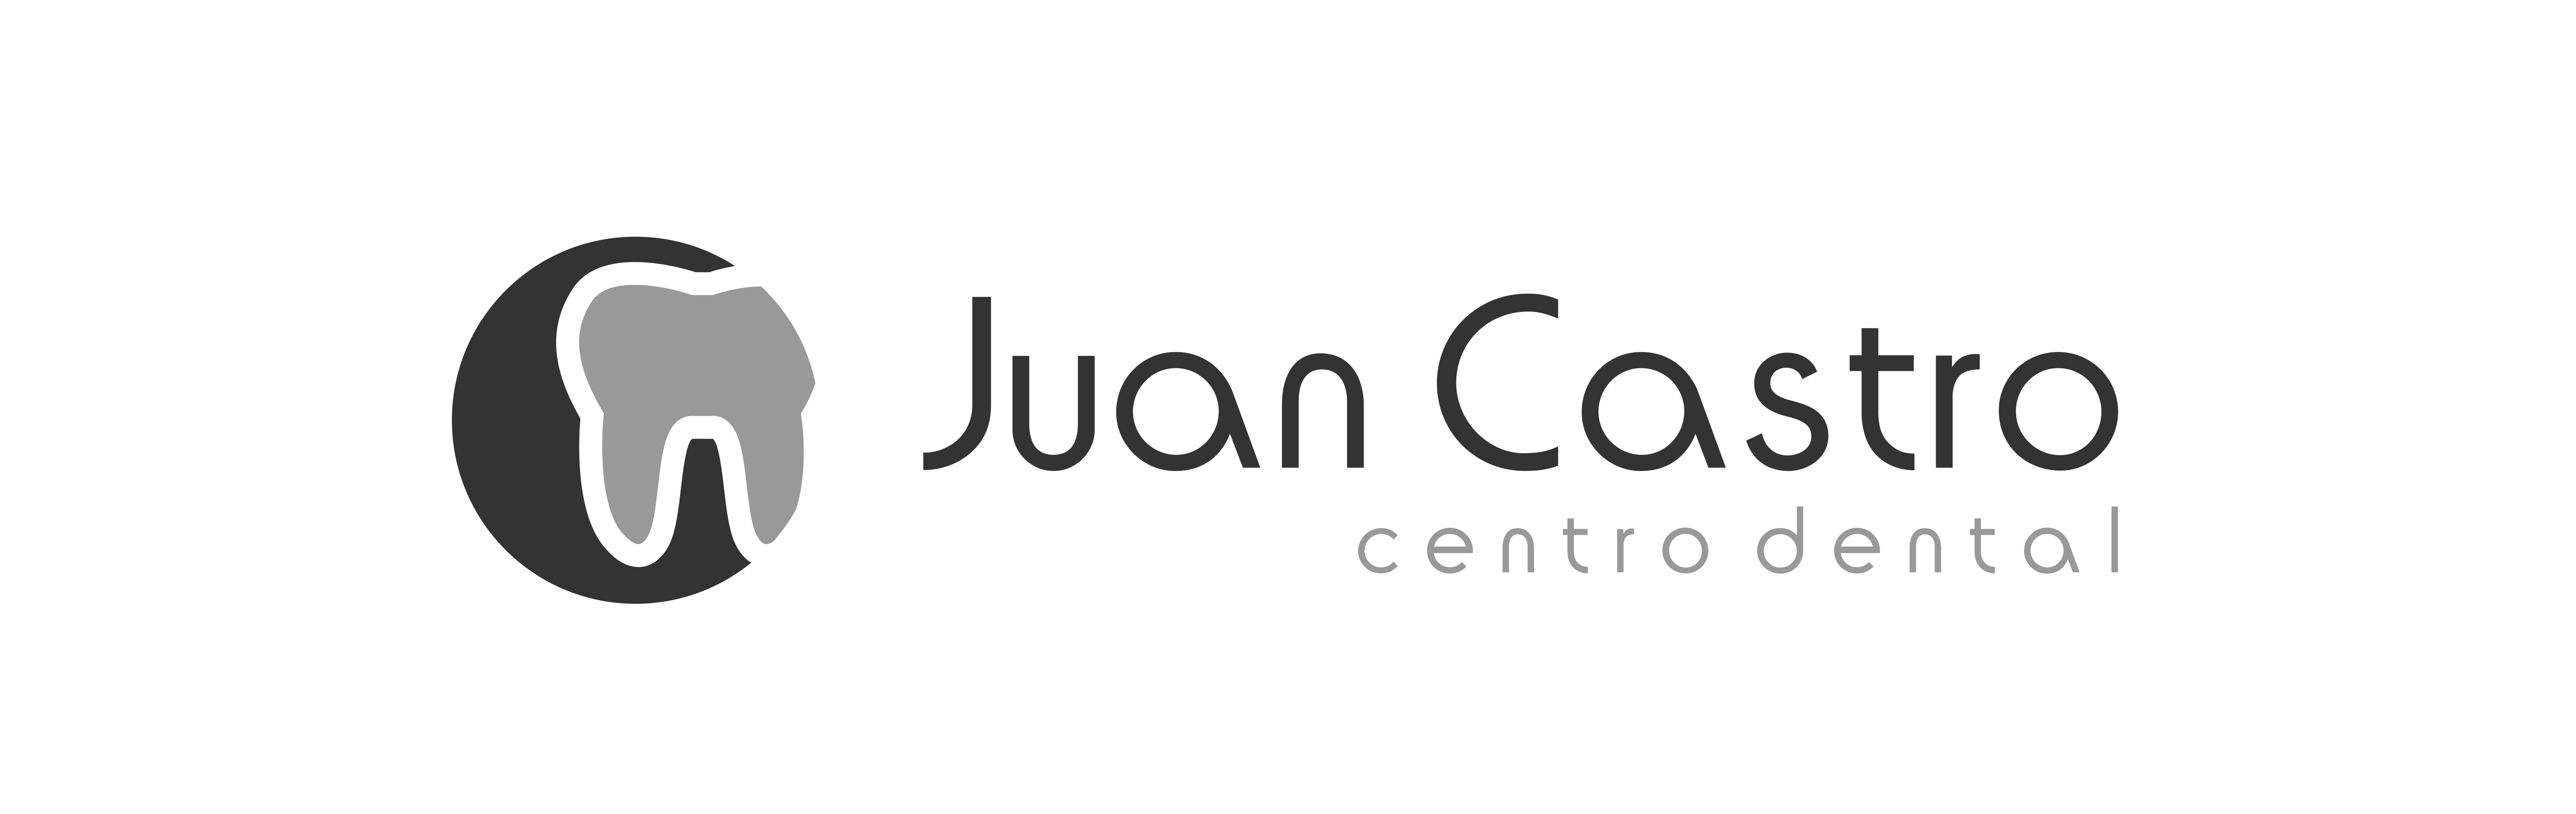 Juan_Castro_1